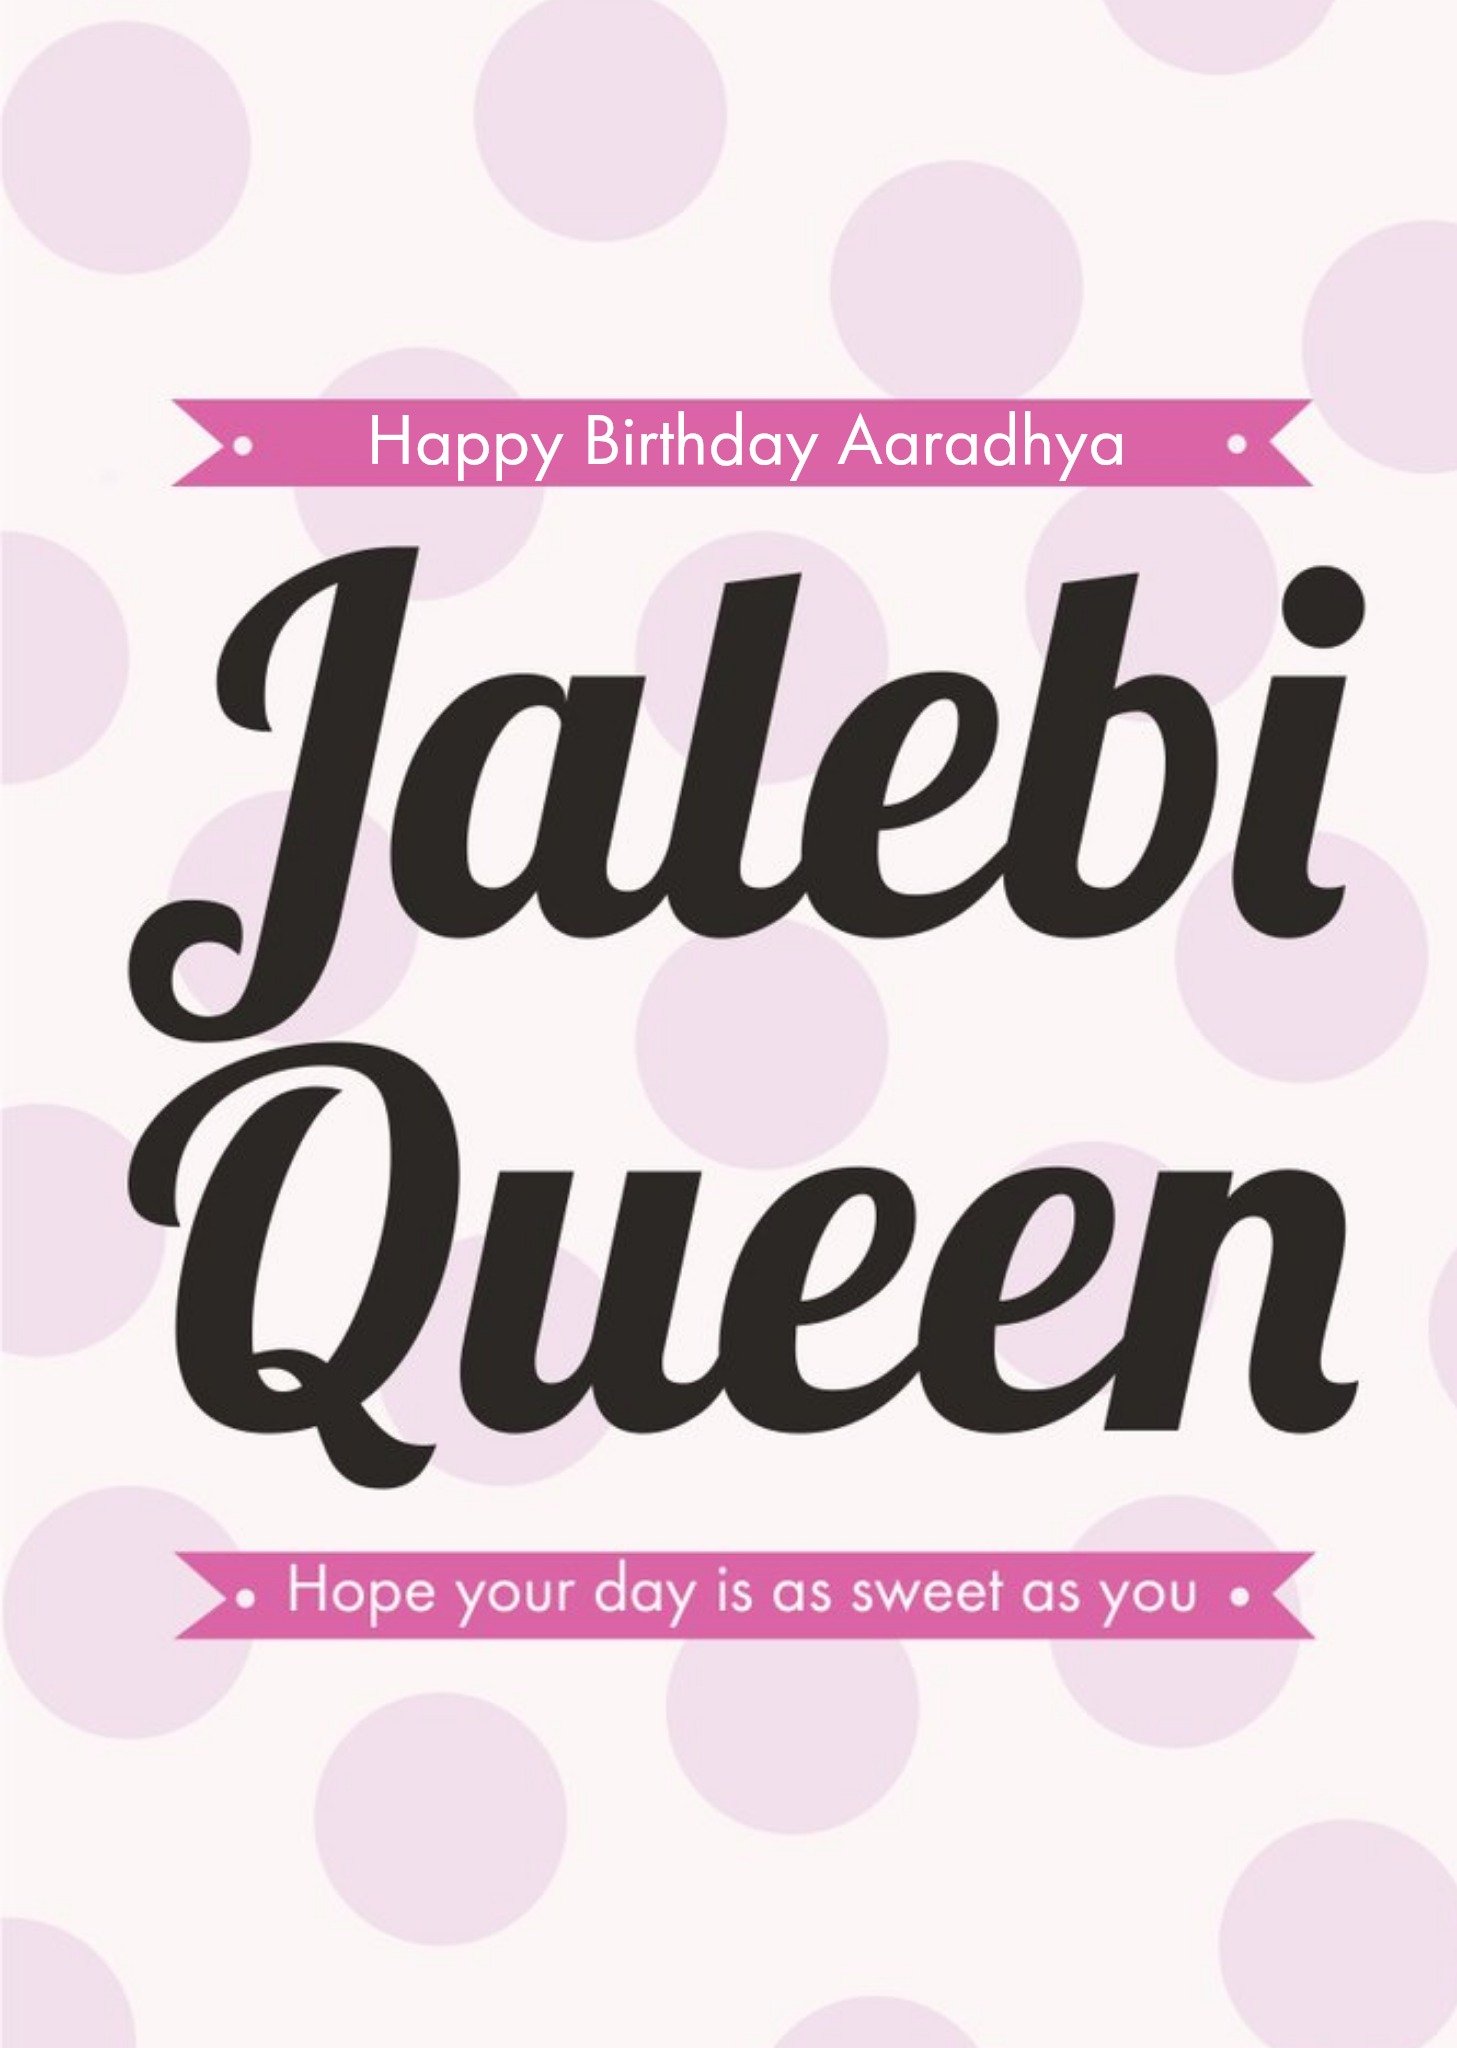 Eastern Print Studio Eastern Print Jalebi Queen Sweet Birthday Card Ecard